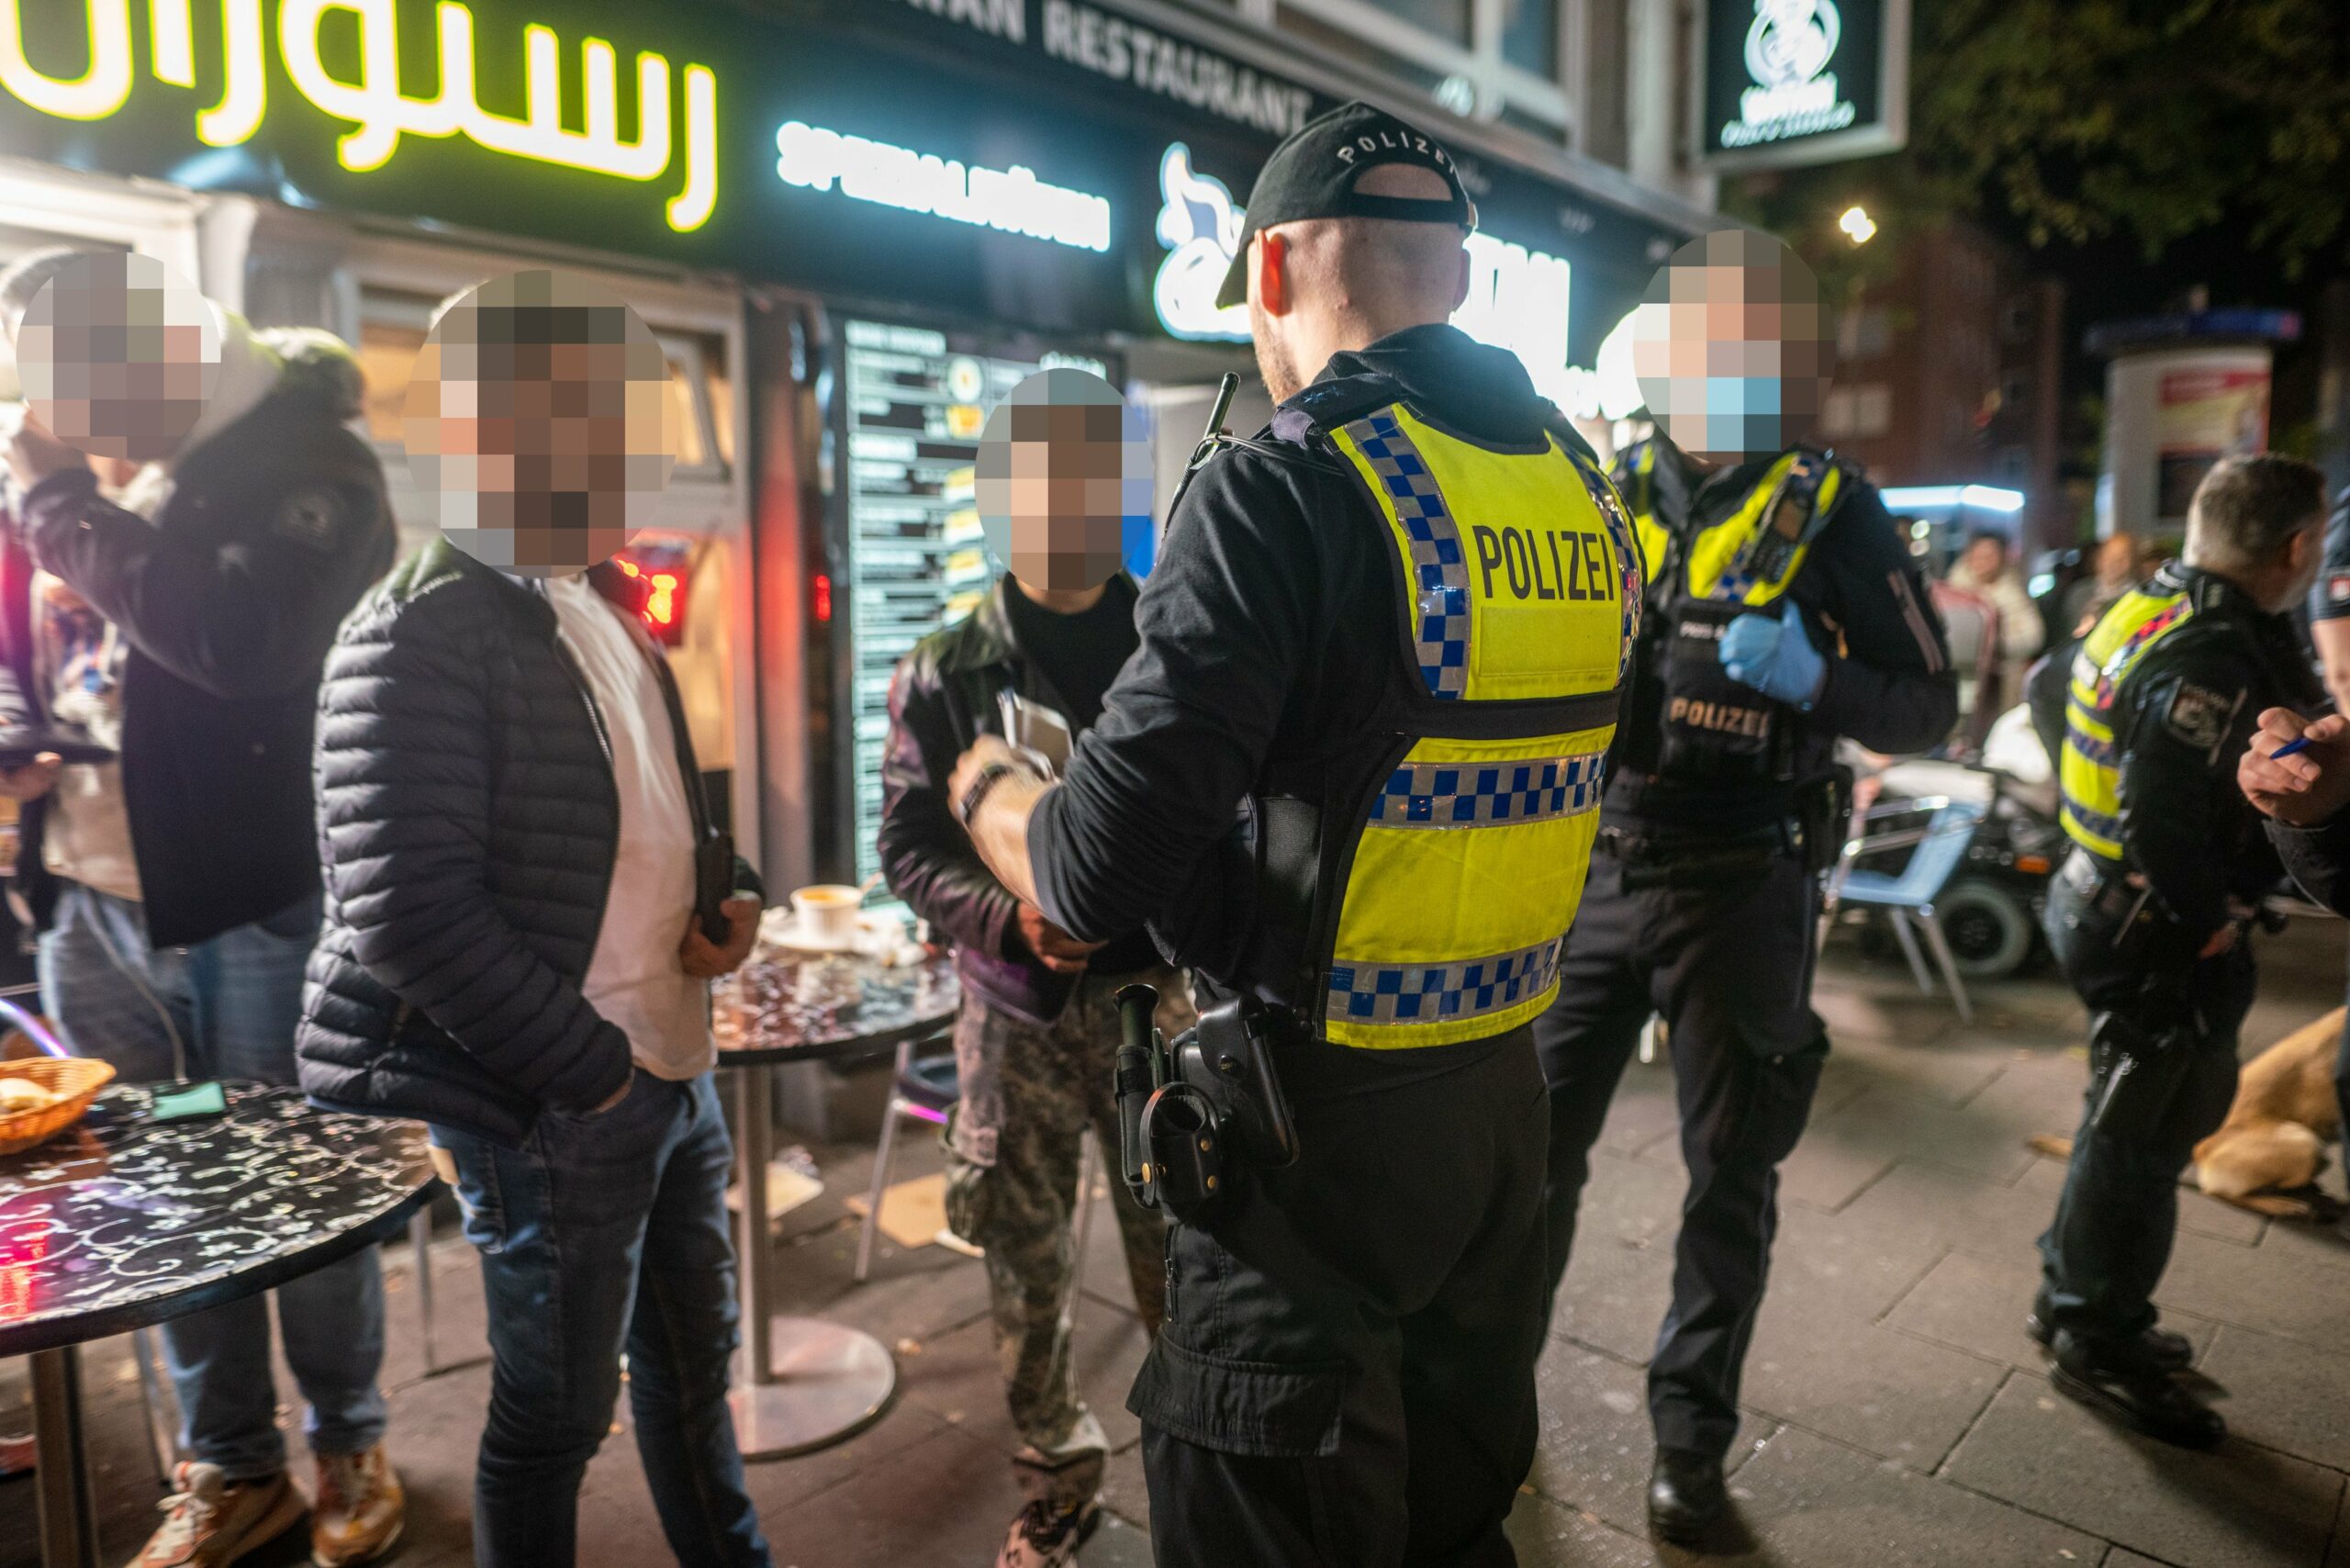 Polizisten sprechen mit Männern vor einem Imbiss in St. Georg, wo eine Razzia stattfand